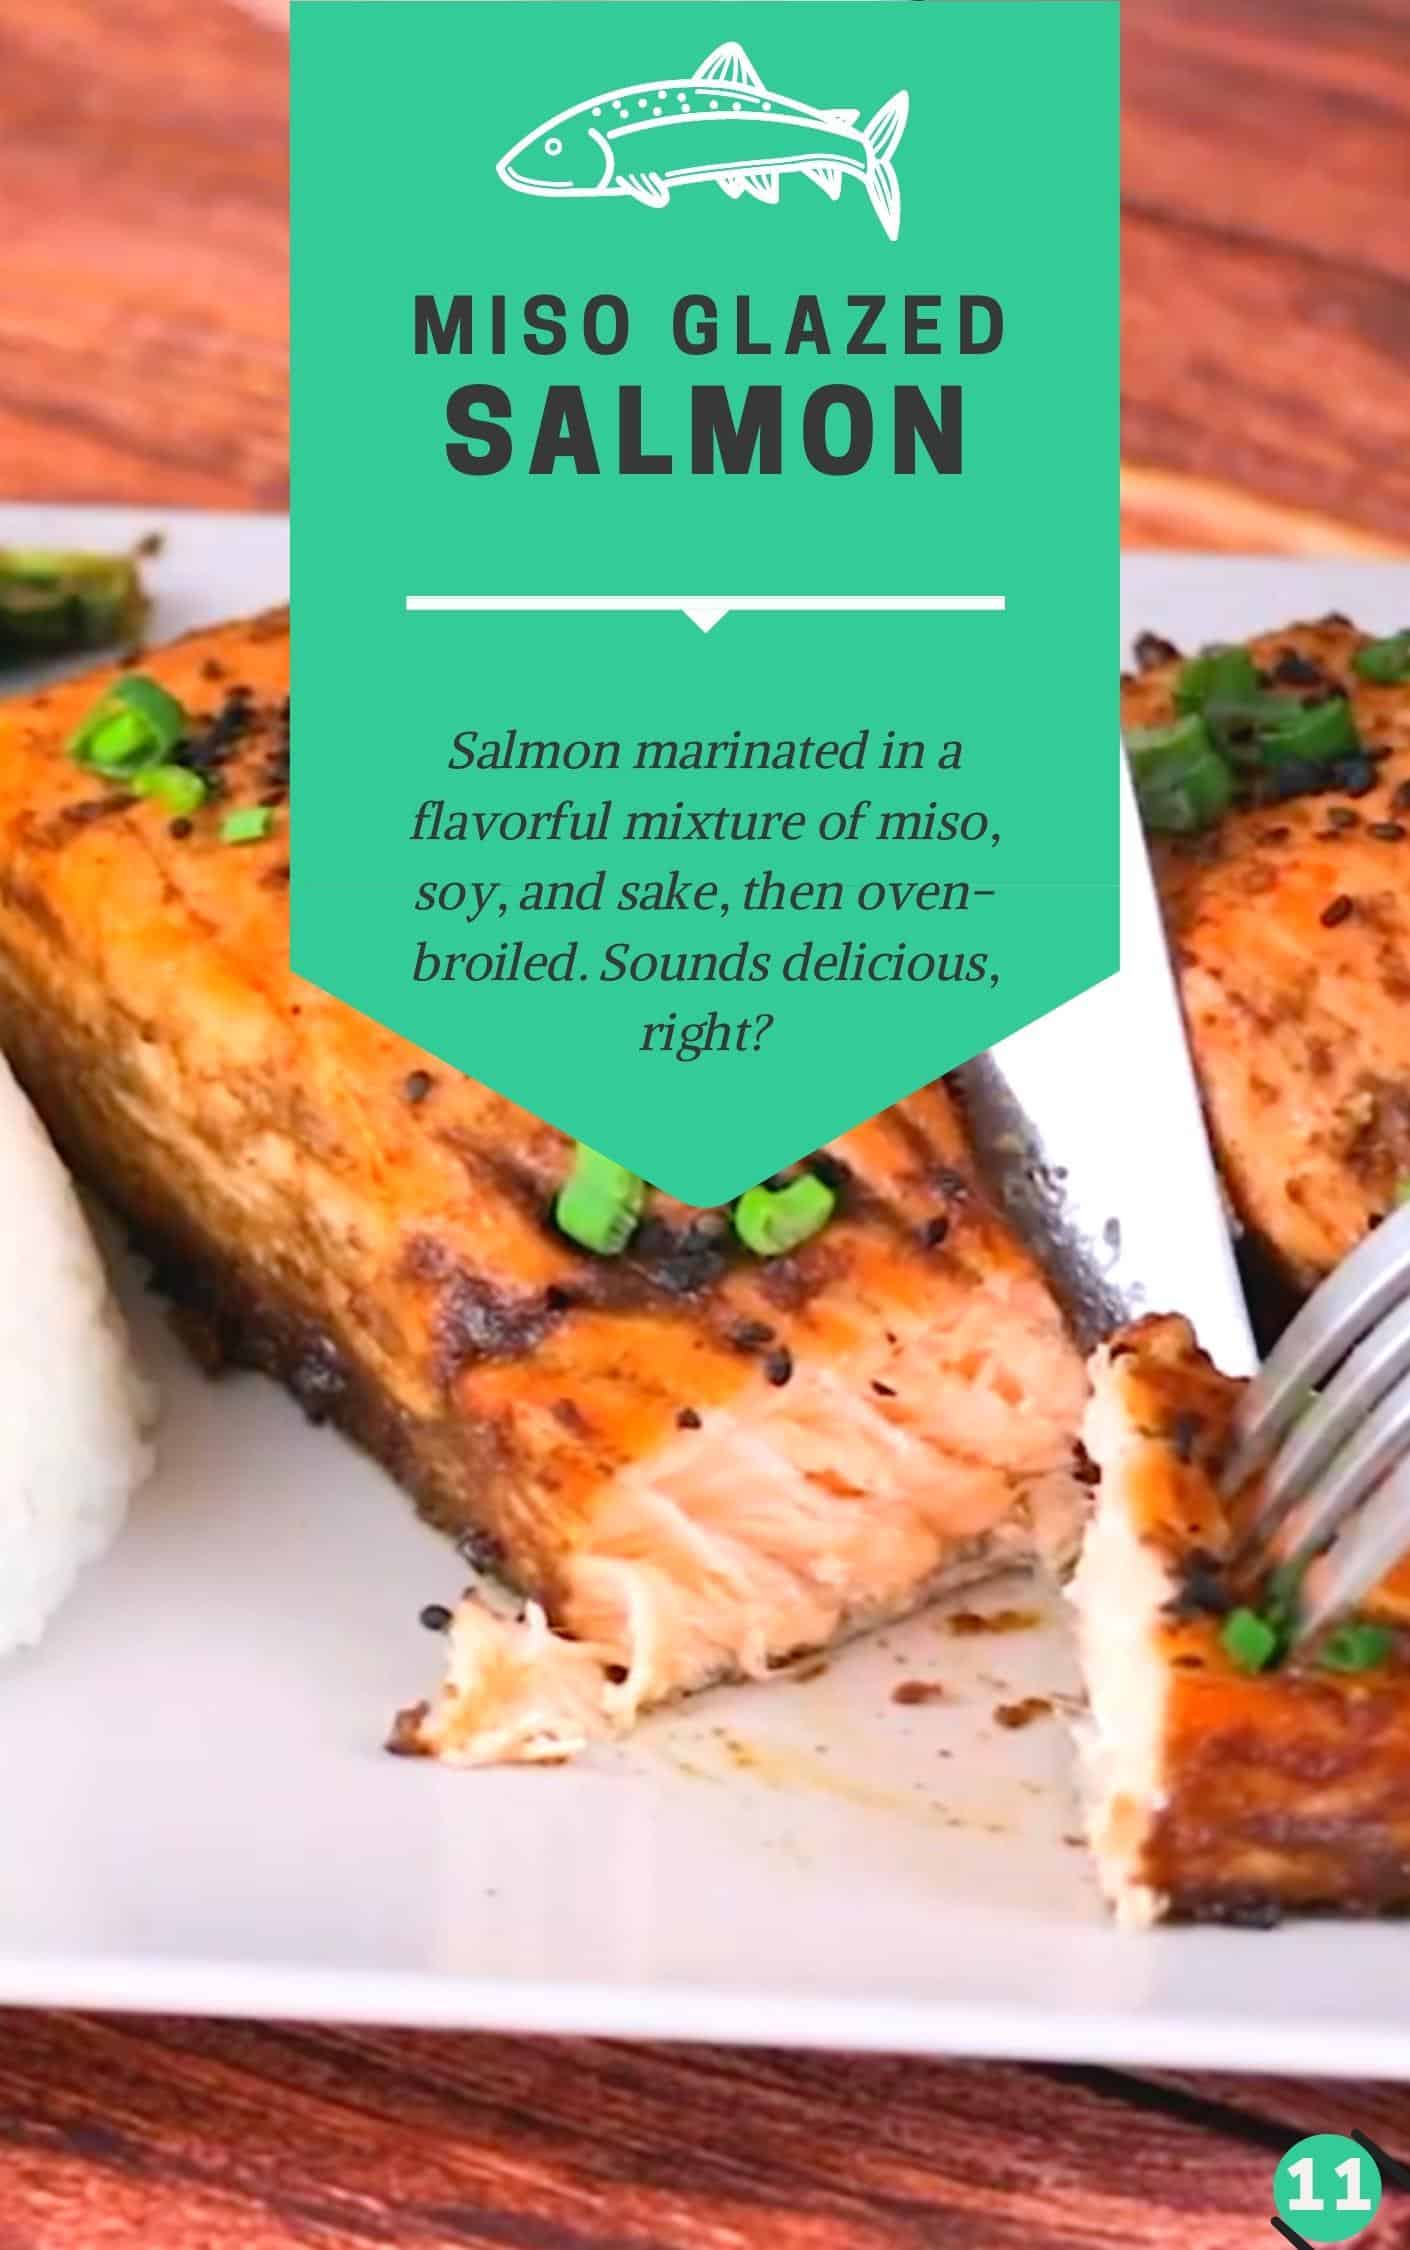 Receta de salmón glaseado con miso